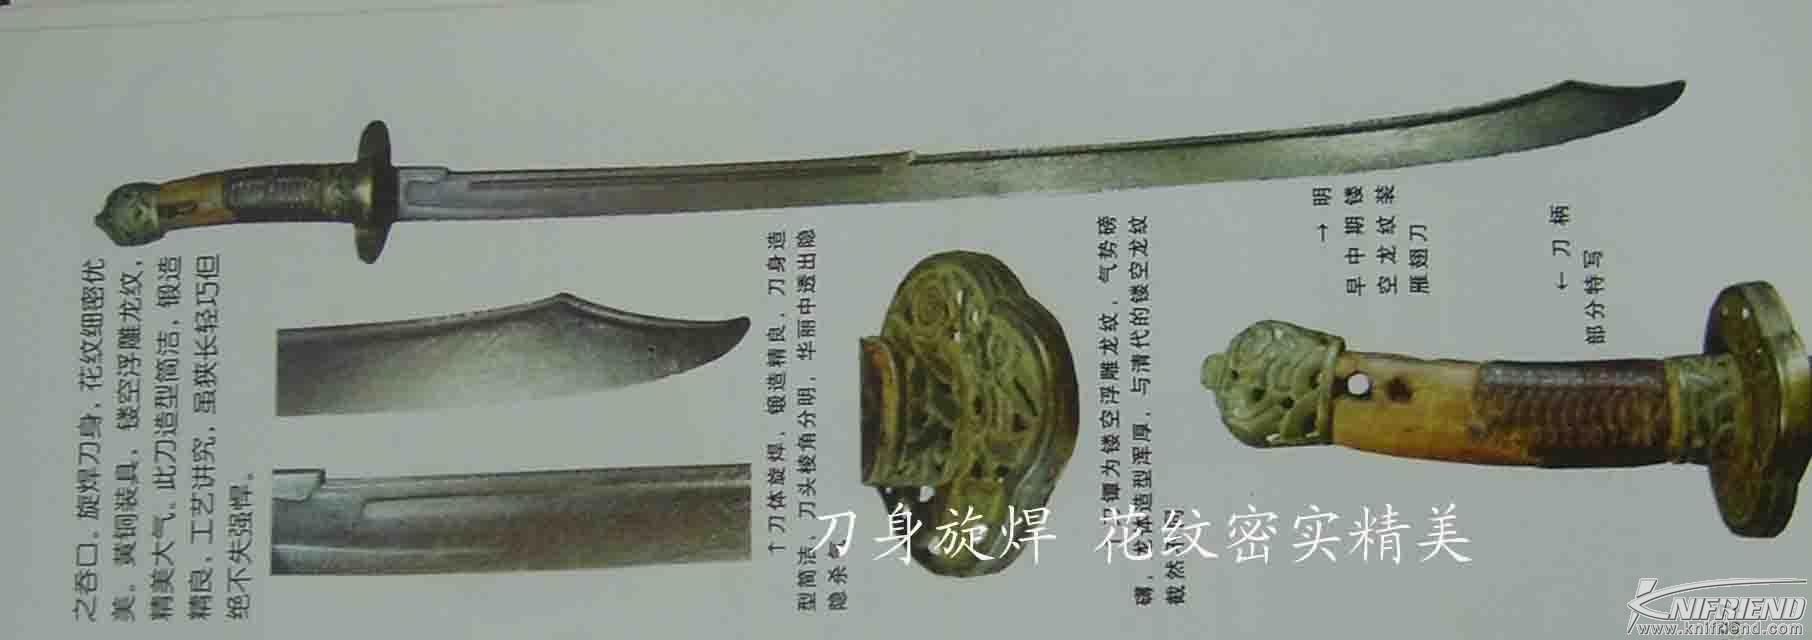 历史的轨迹---中国刀与日本刀发展简述(新手教学帖)_15